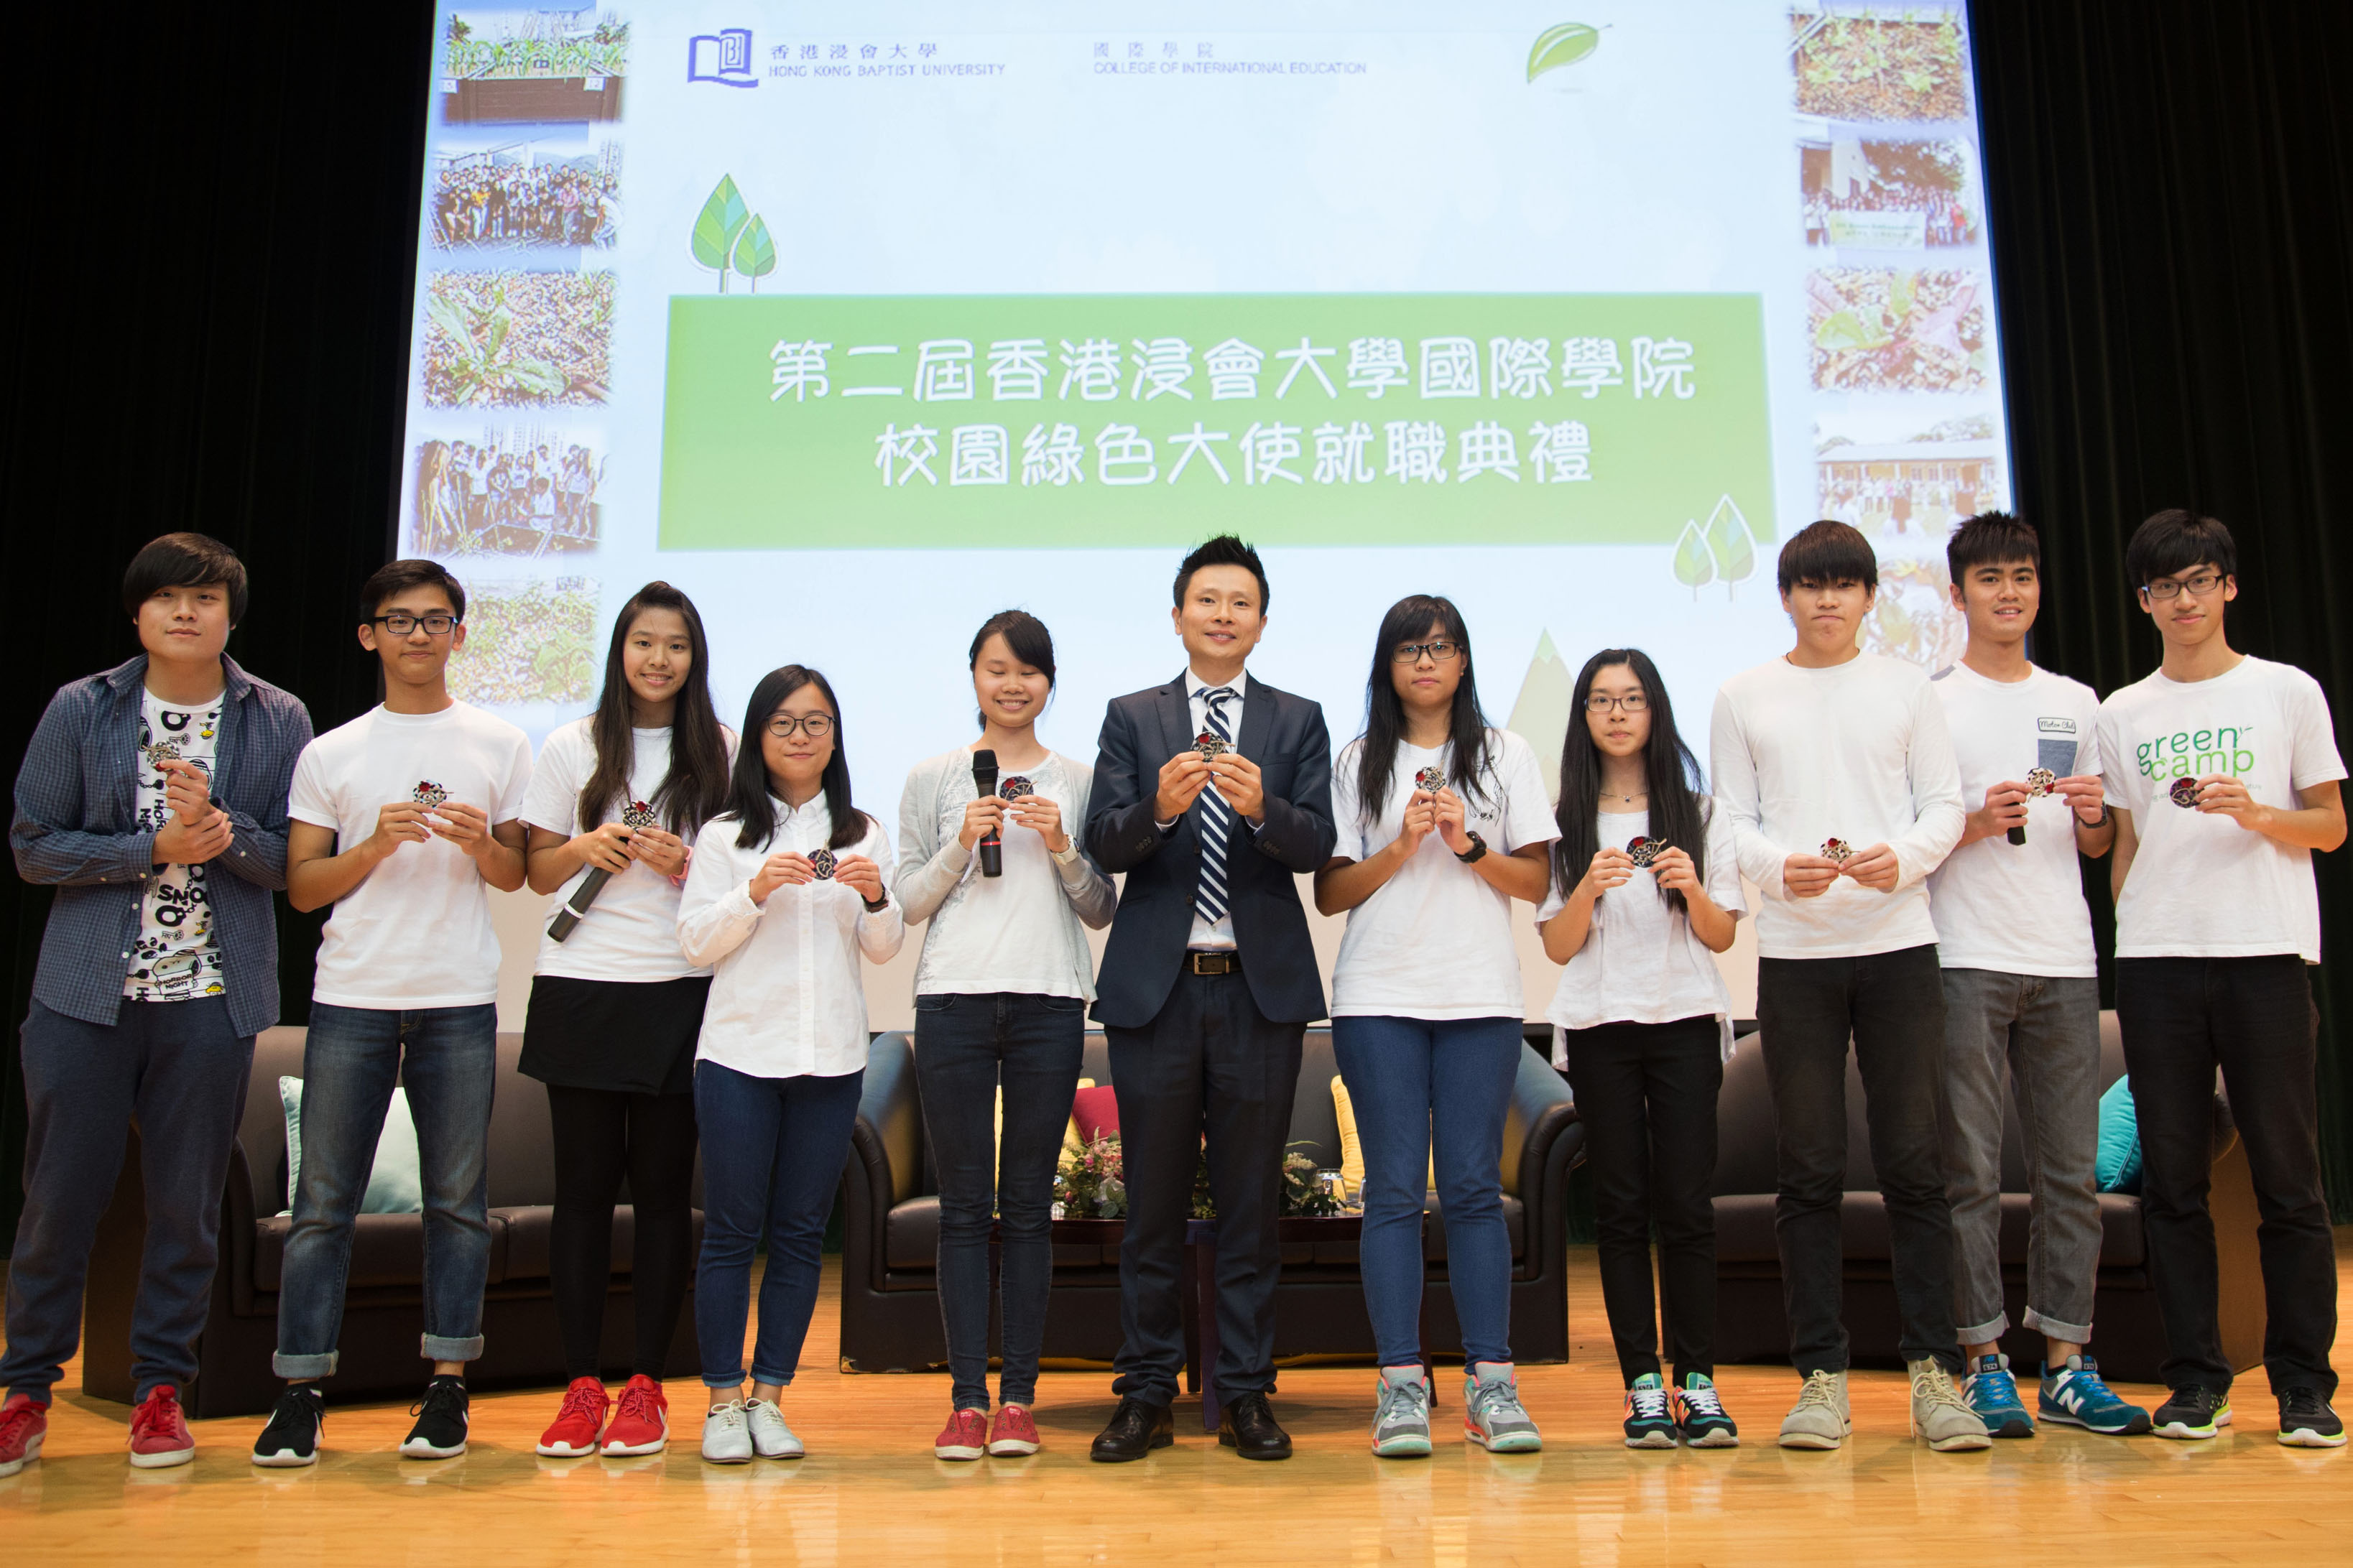 學院總監劉信信博士於活動上向今年的綠色大使頒發就職襟章，期望他們可以在校園內進一步推廣可持續發展的生活模式。